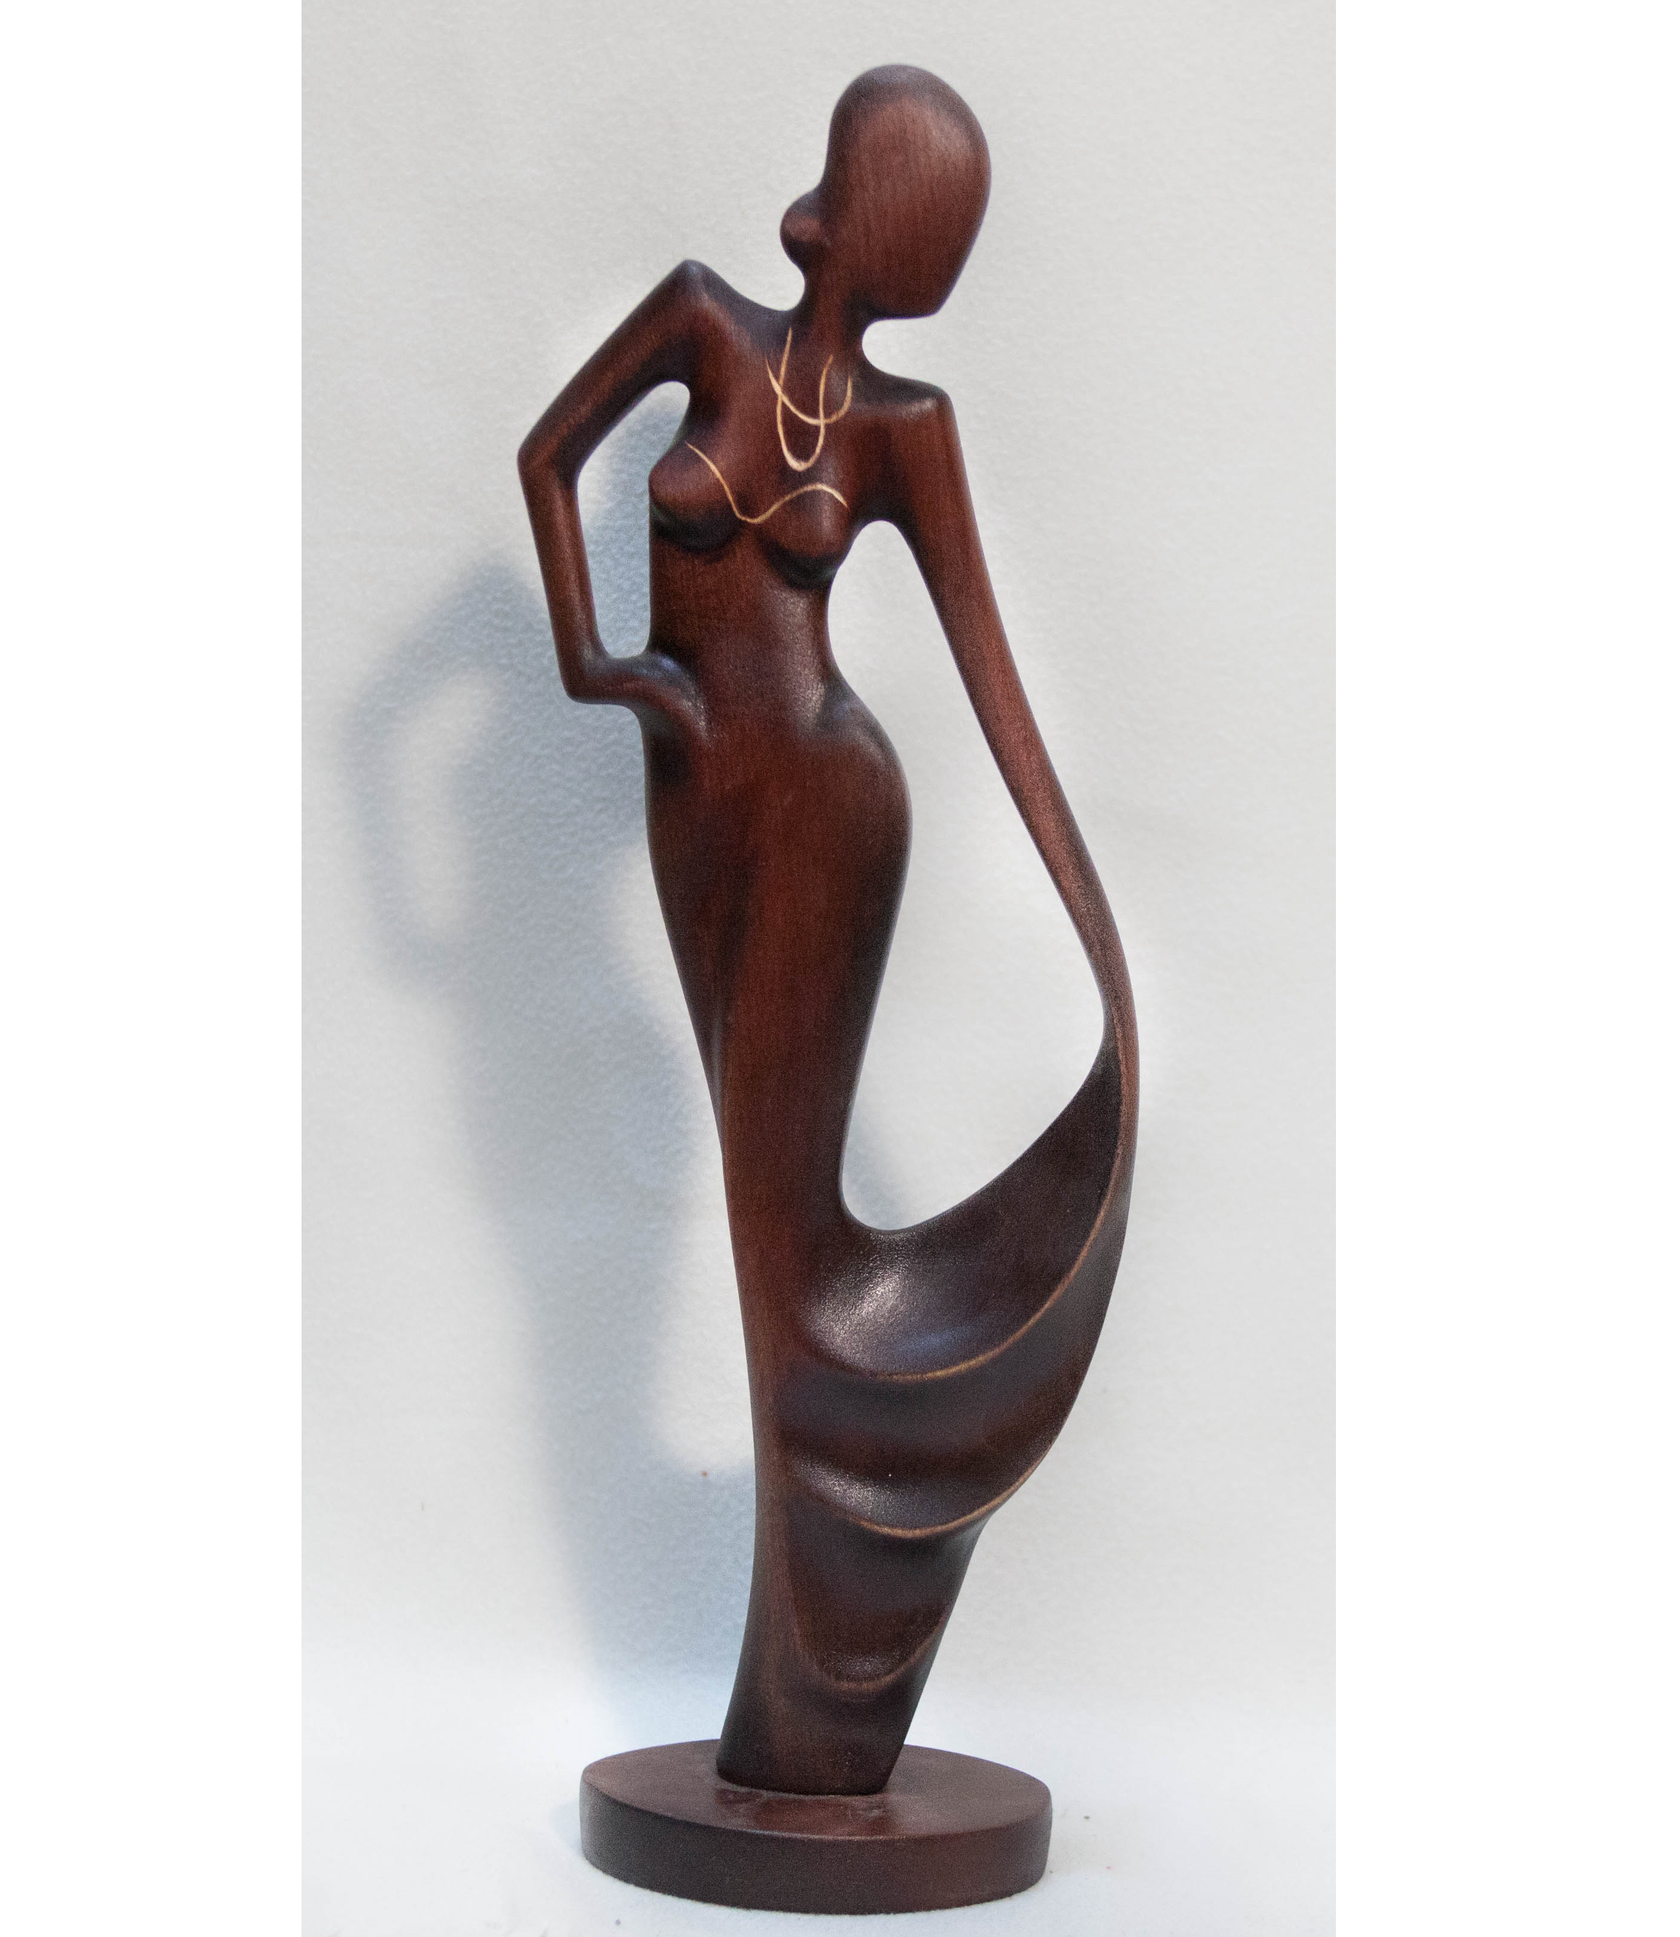 Фигурка девушки. Статуэтка Veronese WS-581. Женские фигурки из дерева. Фигурки девушек из дерева. Фигурка женщины из дерева.